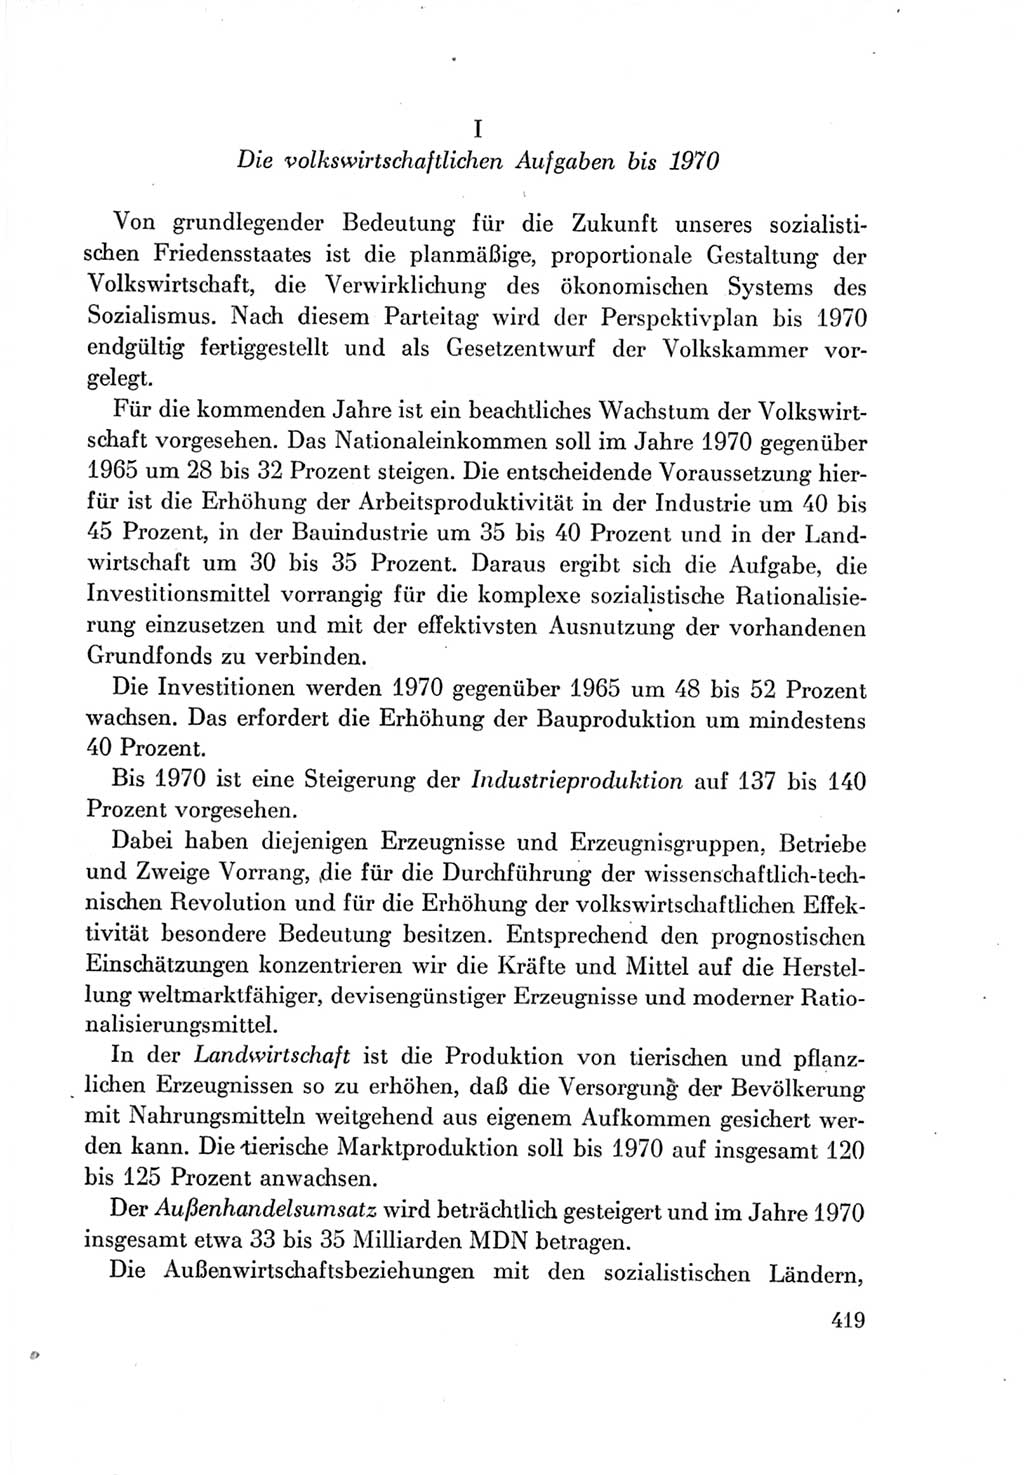 Protokoll der Verhandlungen des Ⅶ. Parteitages der Sozialistischen Einheitspartei Deutschlands (SED) [Deutsche Demokratische Republik (DDR)] 1967, Band Ⅰ, Seite 419 (Prot. Verh. Ⅶ. PT SED DDR 1967, Bd. Ⅰ, S. 419)